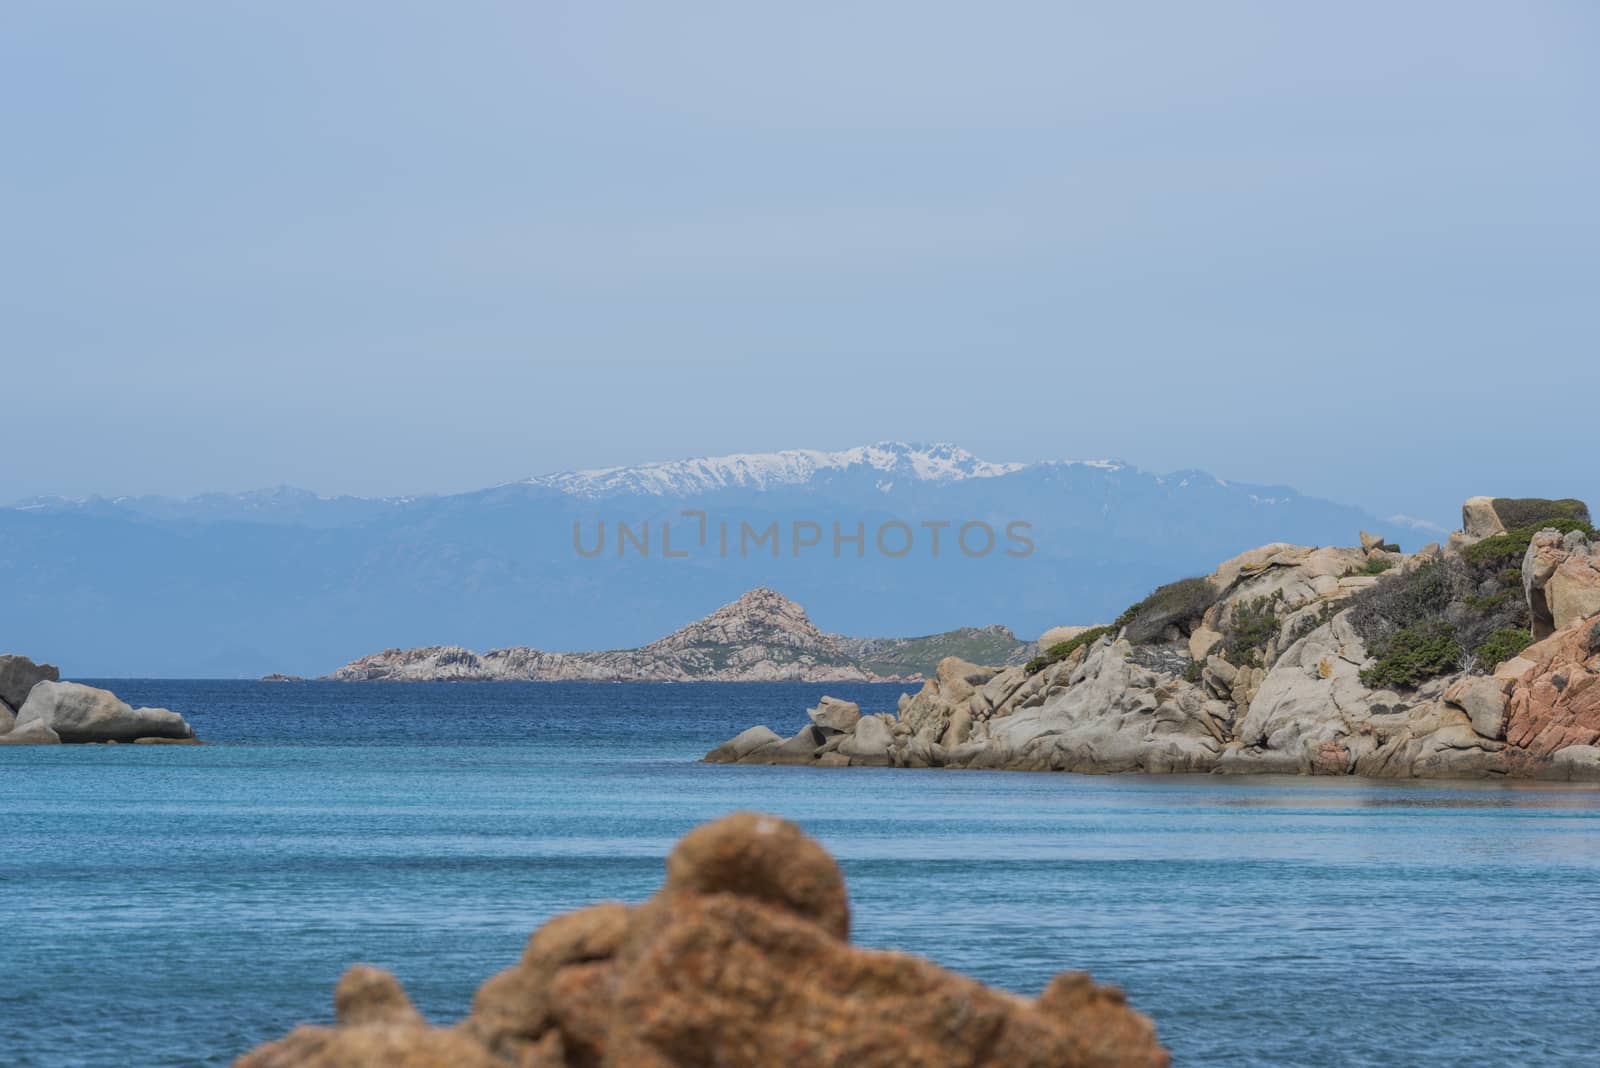 maddalena island near sardinia in italy by compuinfoto